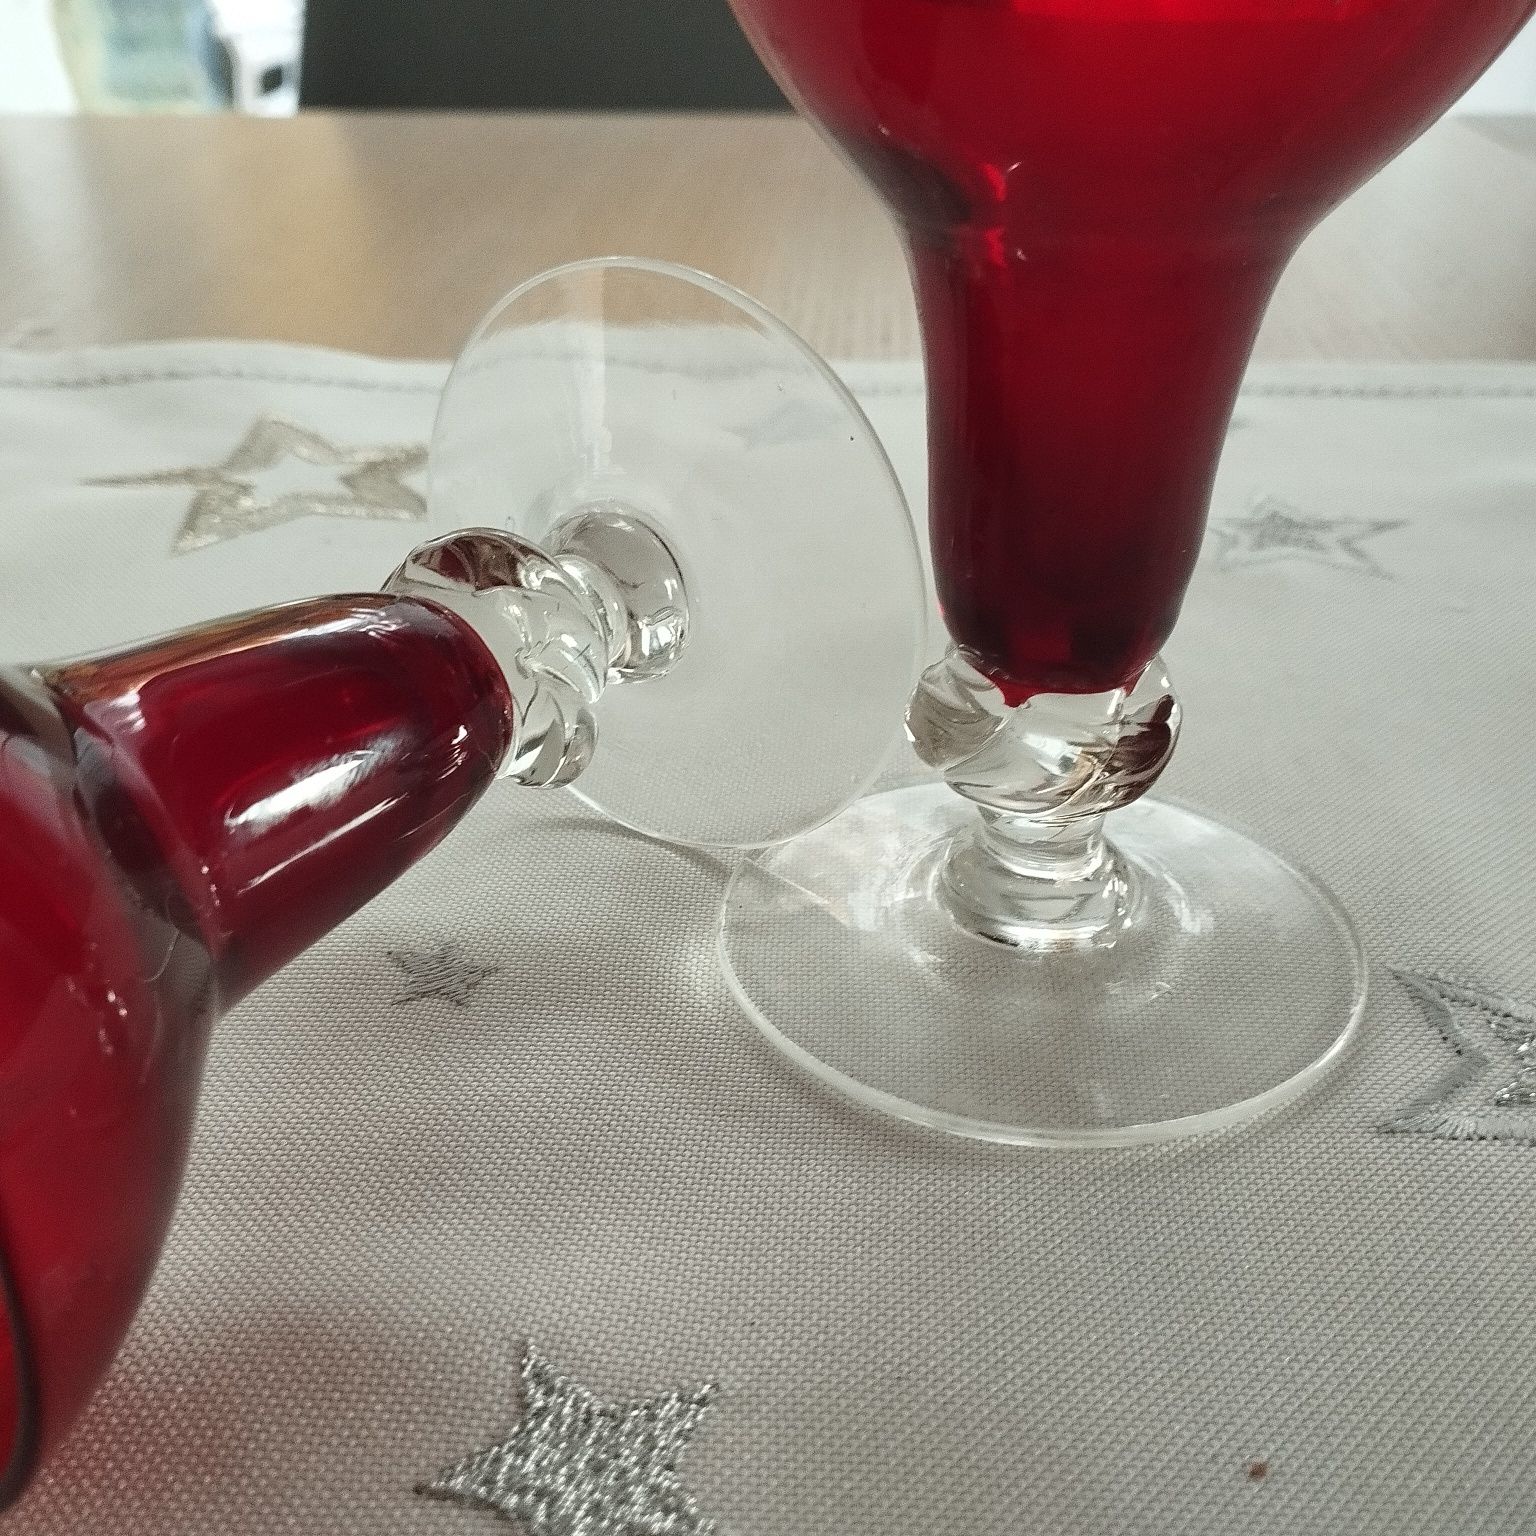 ZESTAW 2 świeczników ze szkła vintage ELME Glasbruk w kolorze rubinowo